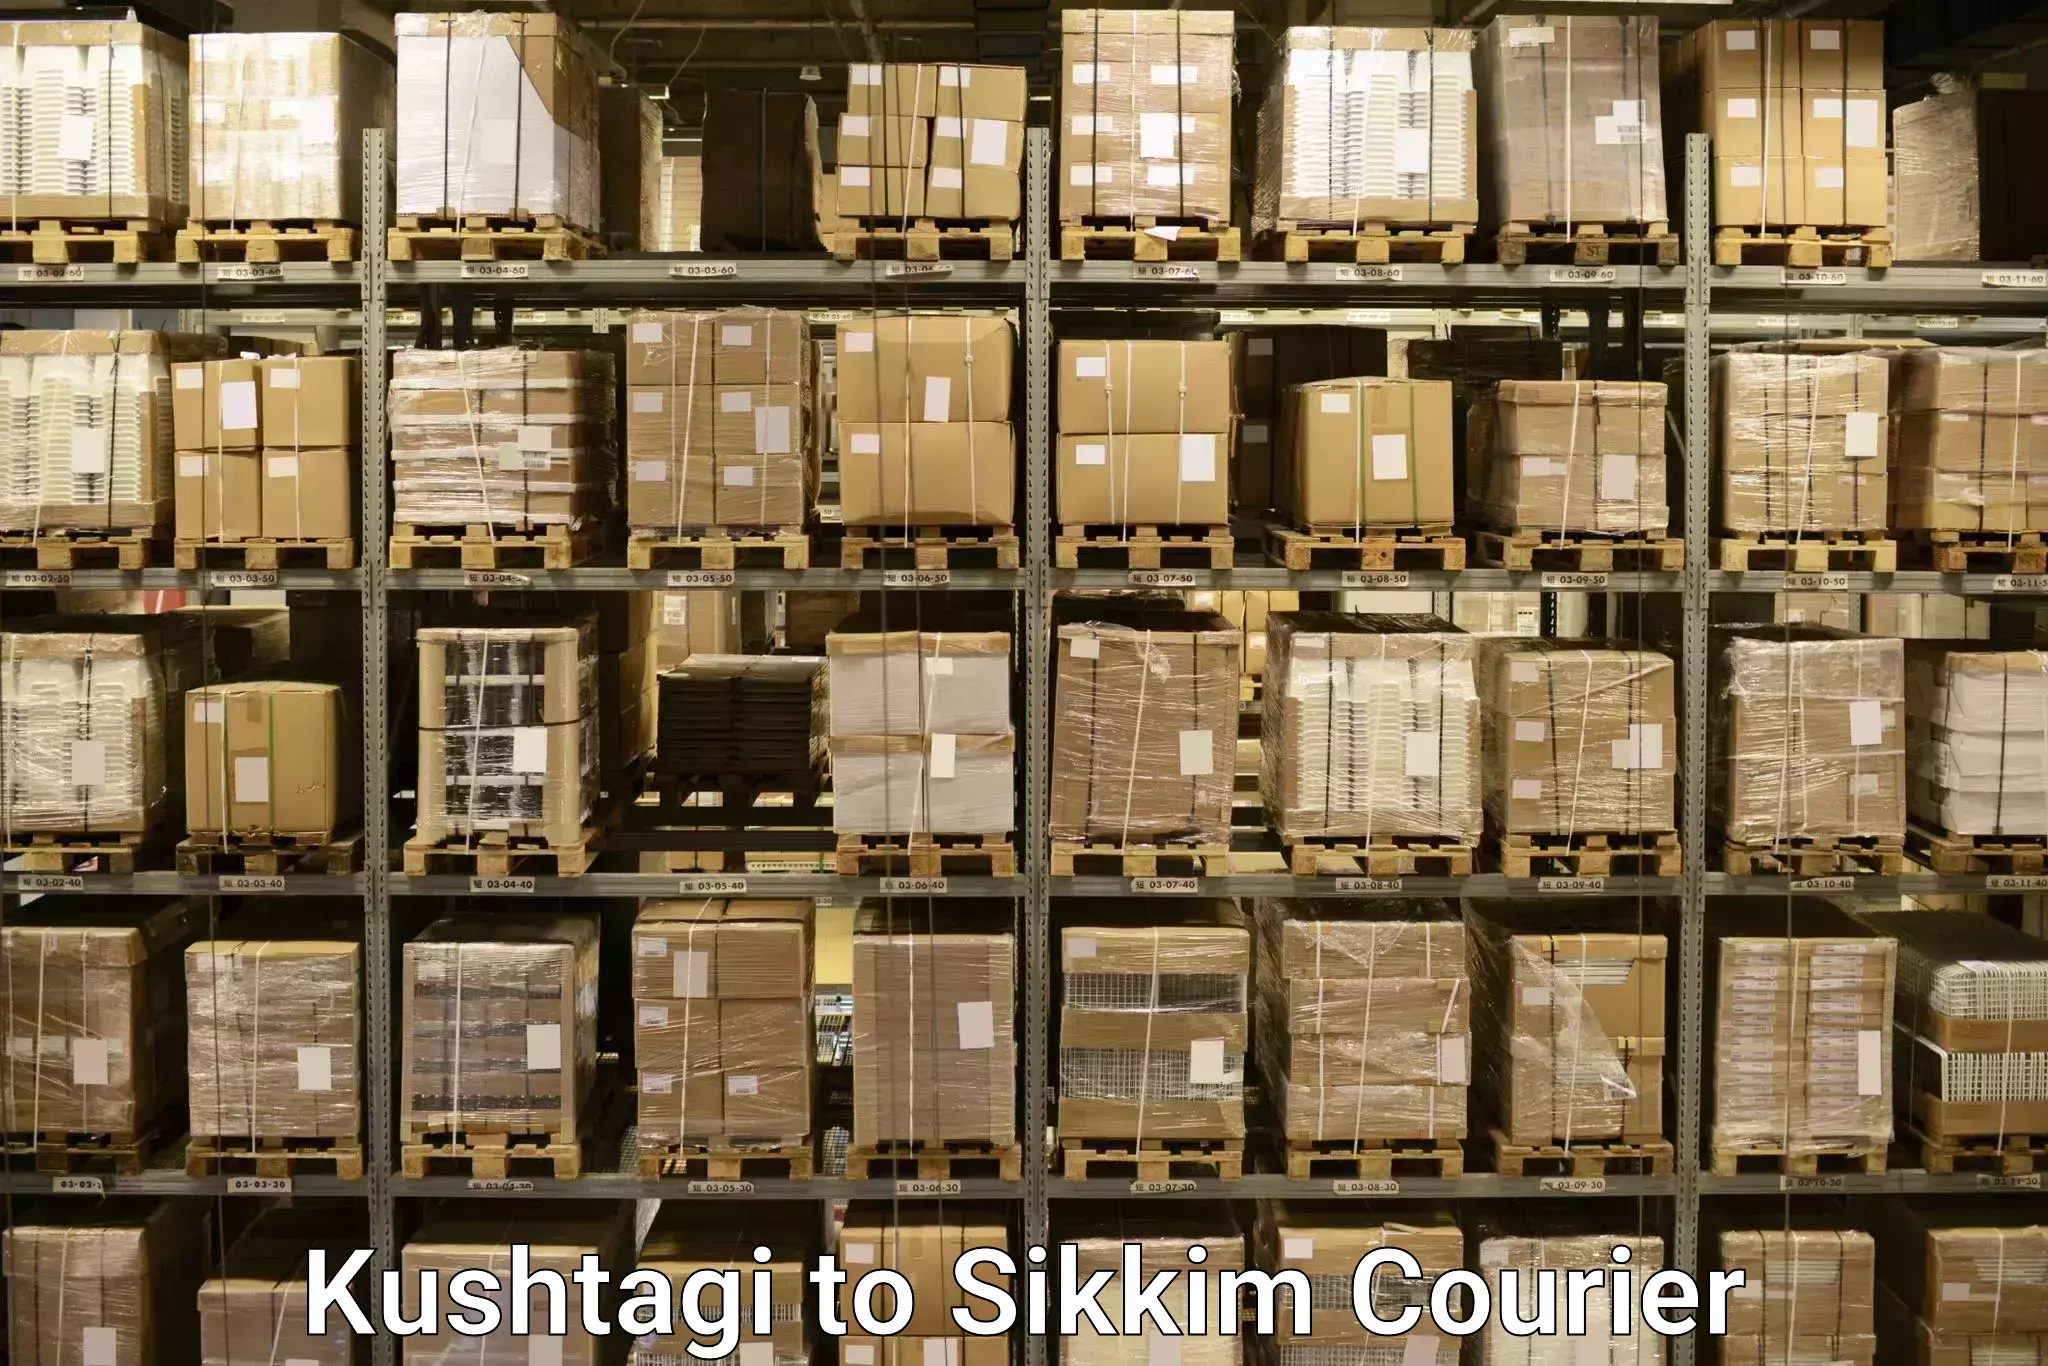 Luggage delivery network Kushtagi to West Sikkim